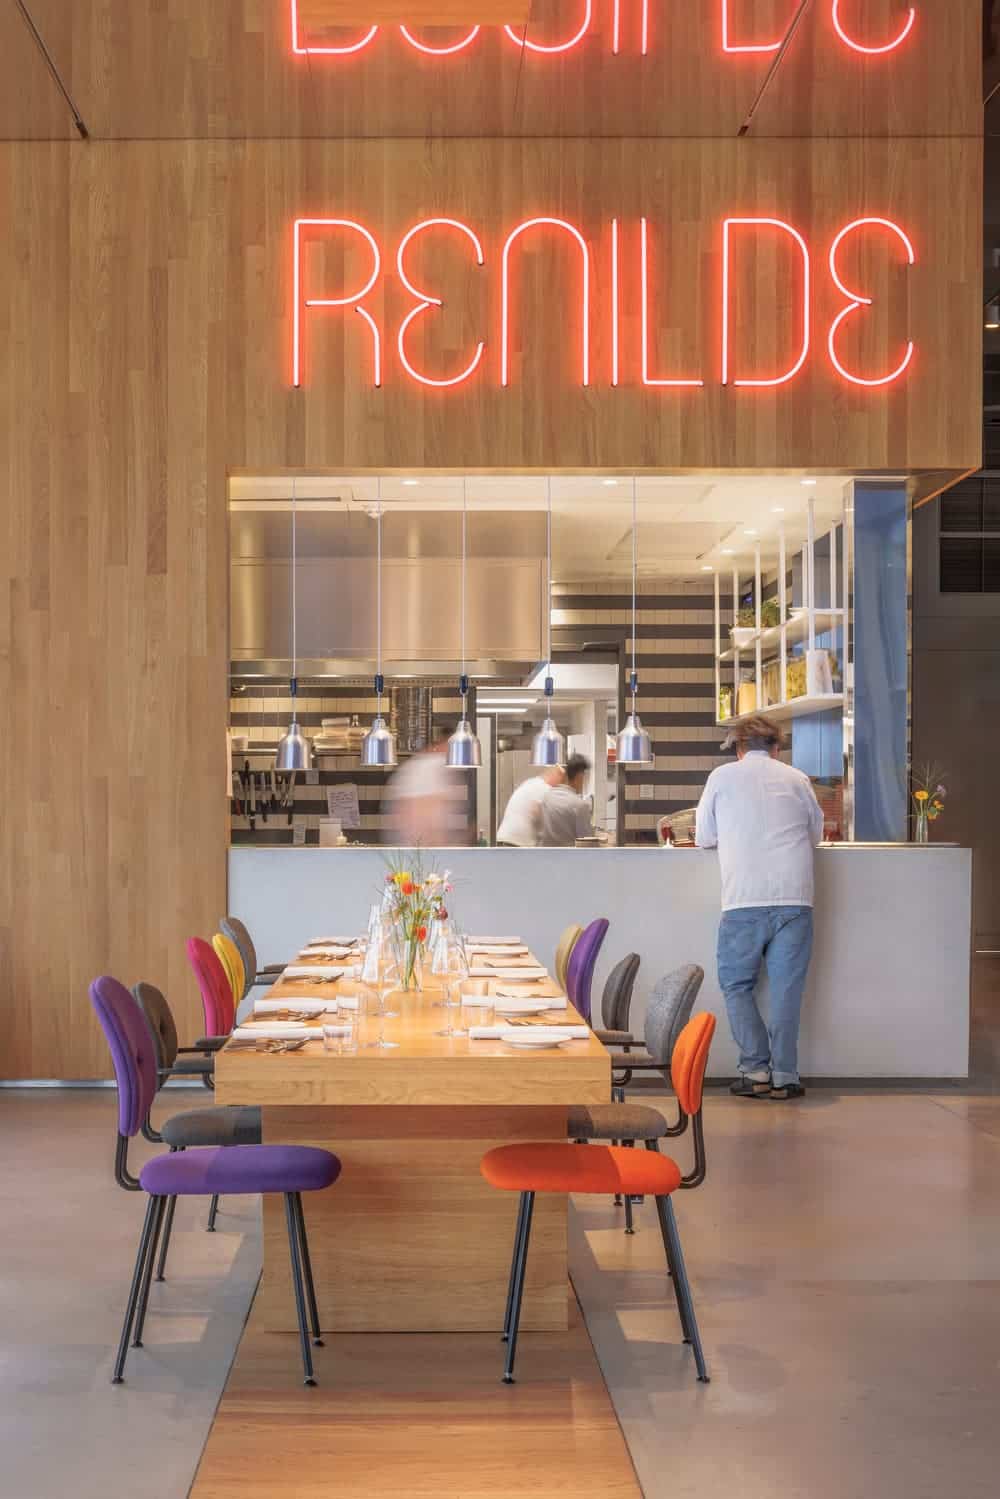 concrete designs Renilde Restaurant at Depot Boijmans van Beuningen